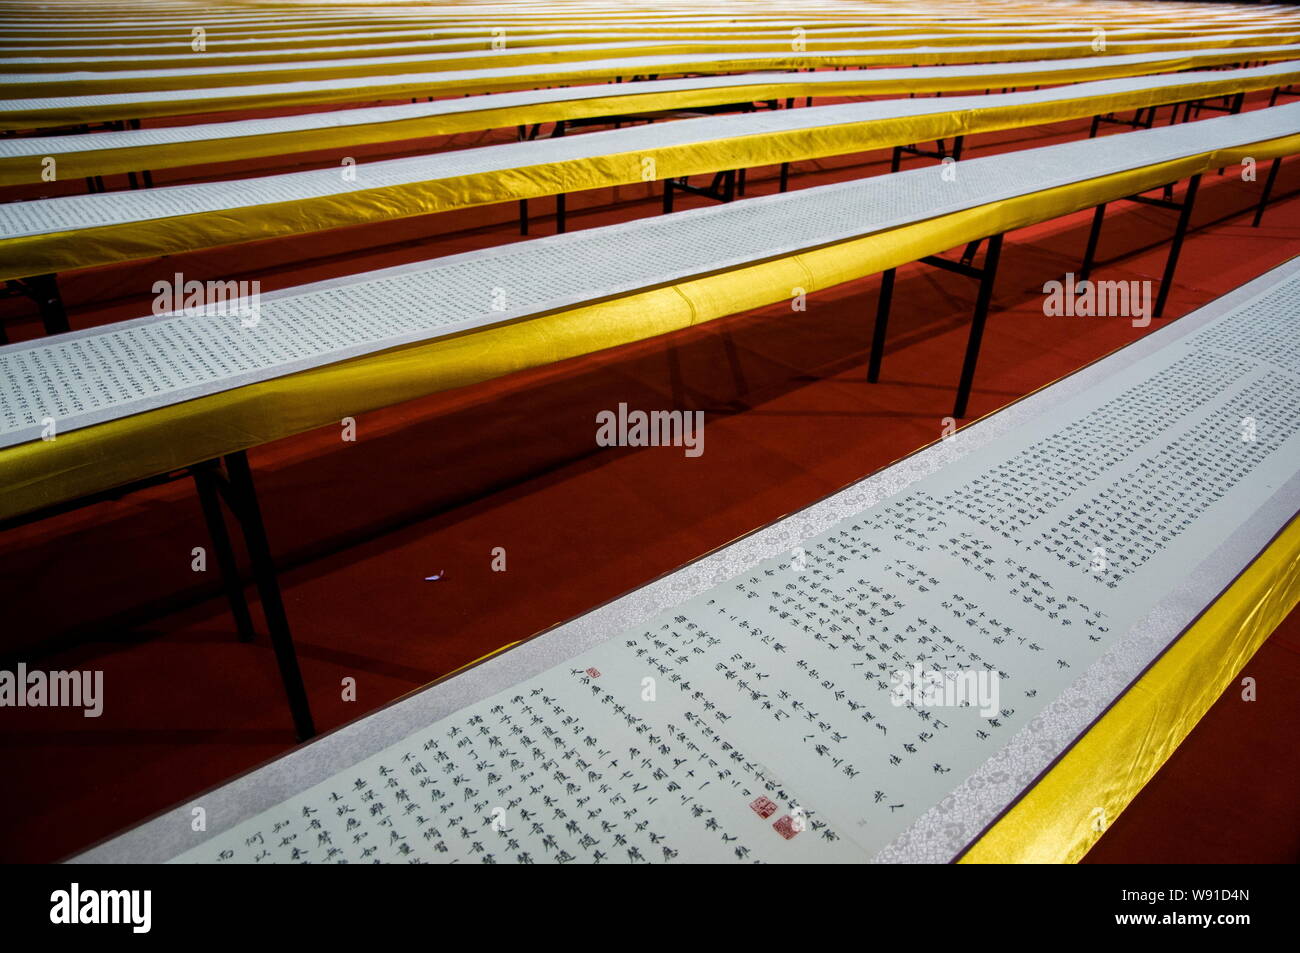 Les volutes des sutra bouddhiste écrit par résident chinois il Guojian s'affichent dans un gymnase de basket-ball dans la ville de Shenzhen, Guangdong, Chine du sud Banque D'Images